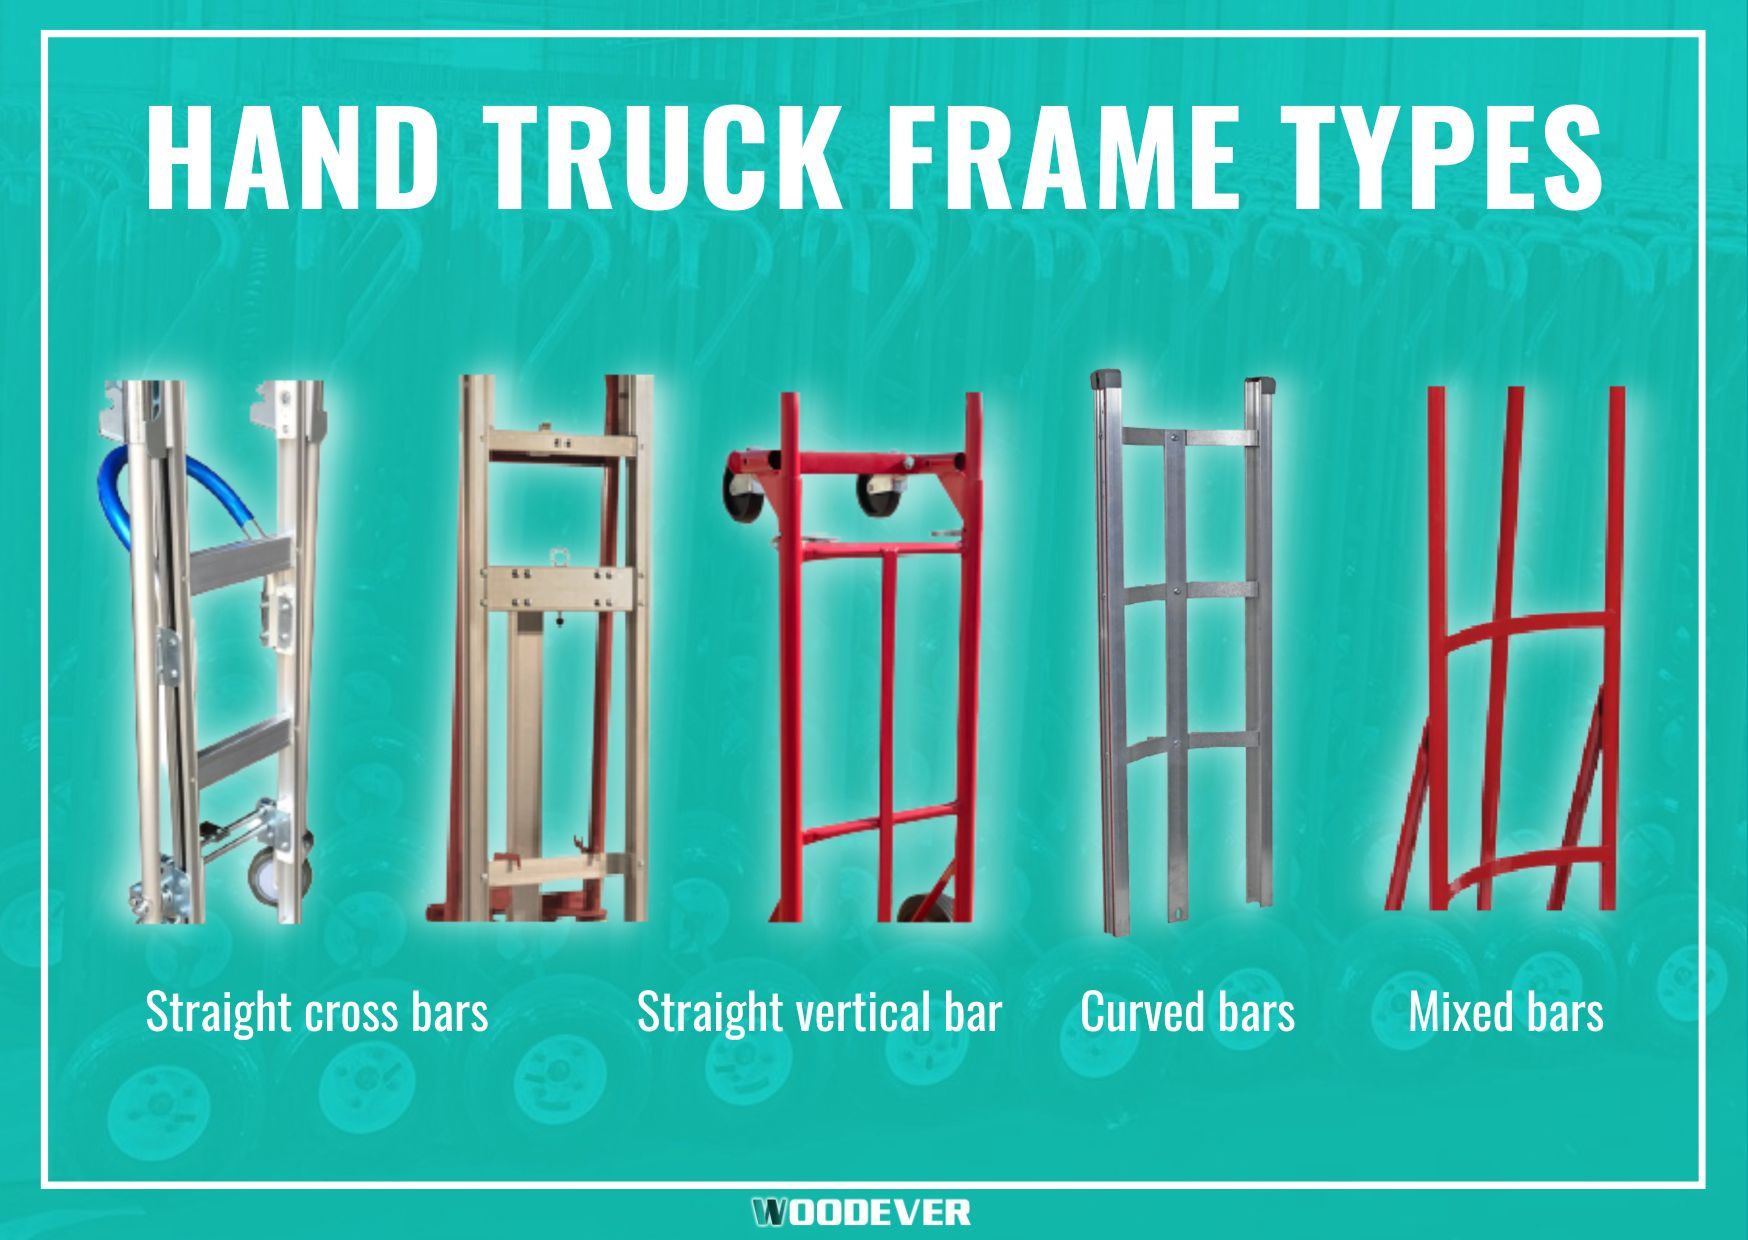 हैंड ट्रक, डॉली कार्ट के लिए सामान्य फ्रेम के प्रकार: स्टील फ्रेम, एल्यूमिनियम फ्रेम, कर्व्ड फ्रेम